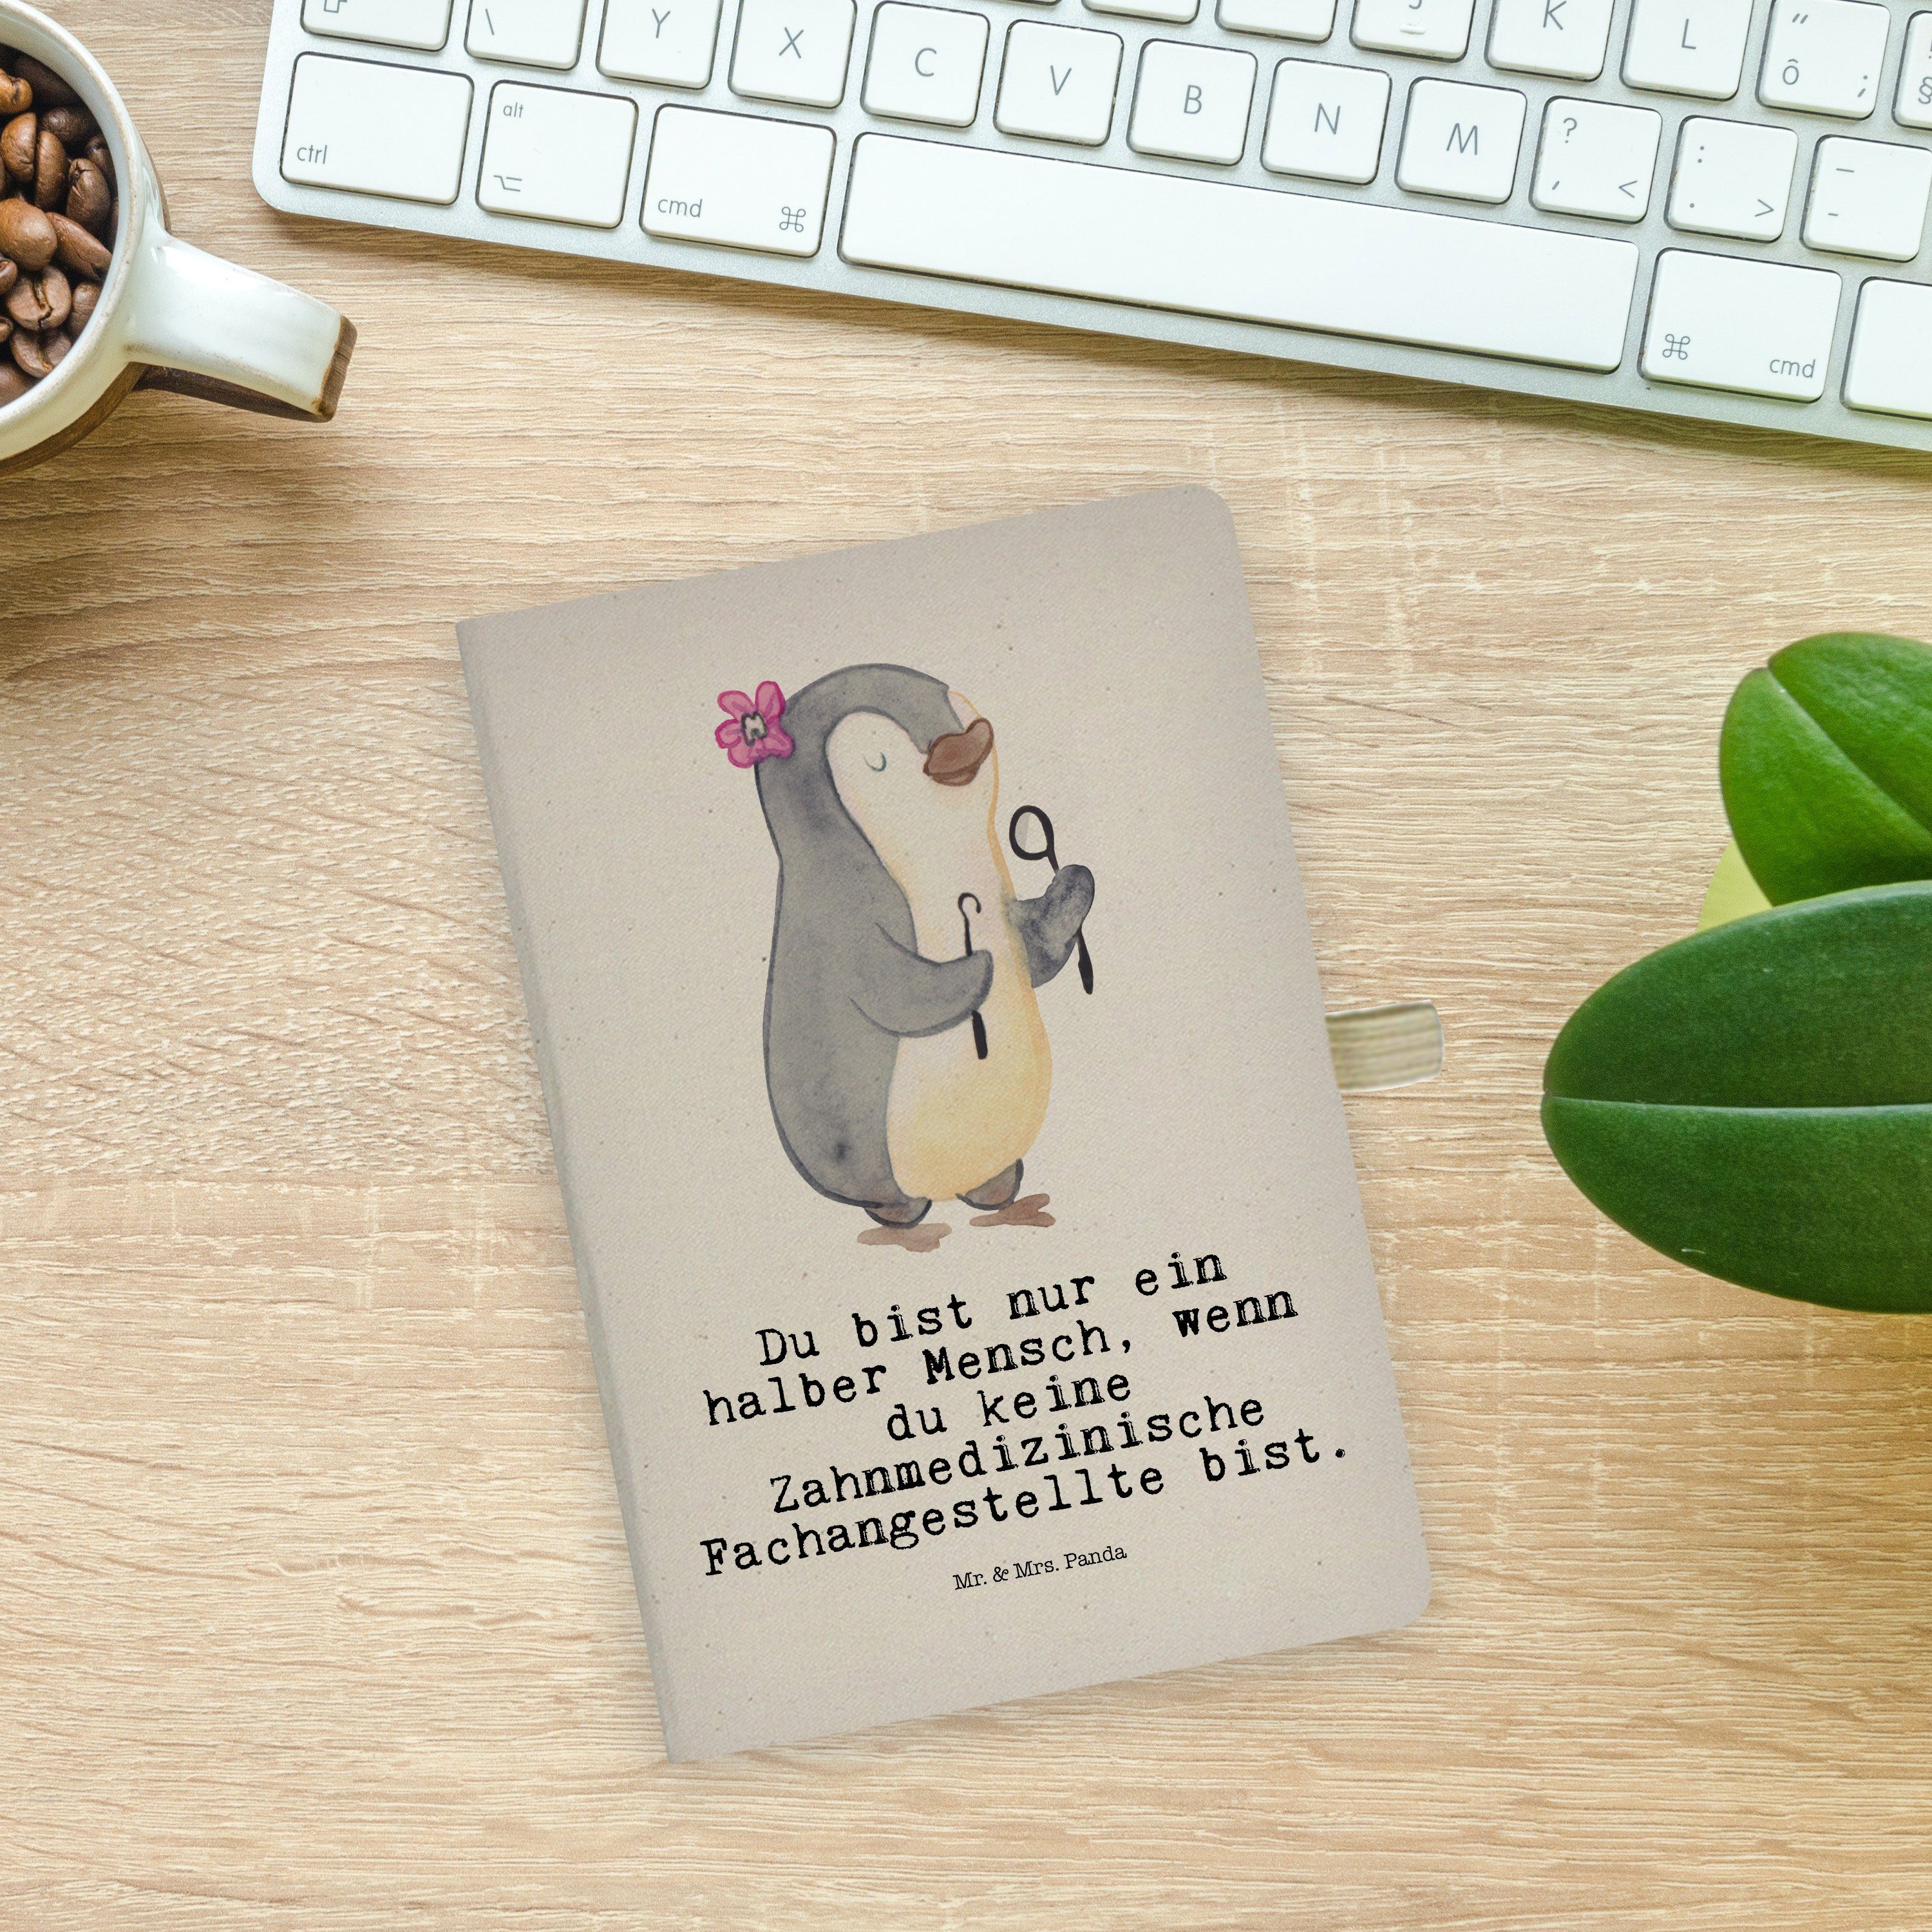 Fachangestellte - N Geschenk, Mrs. & Mrs. - Zahnmedizinische mit Panda Herz Mr. Transparent Notizbuch Panda Mr. &